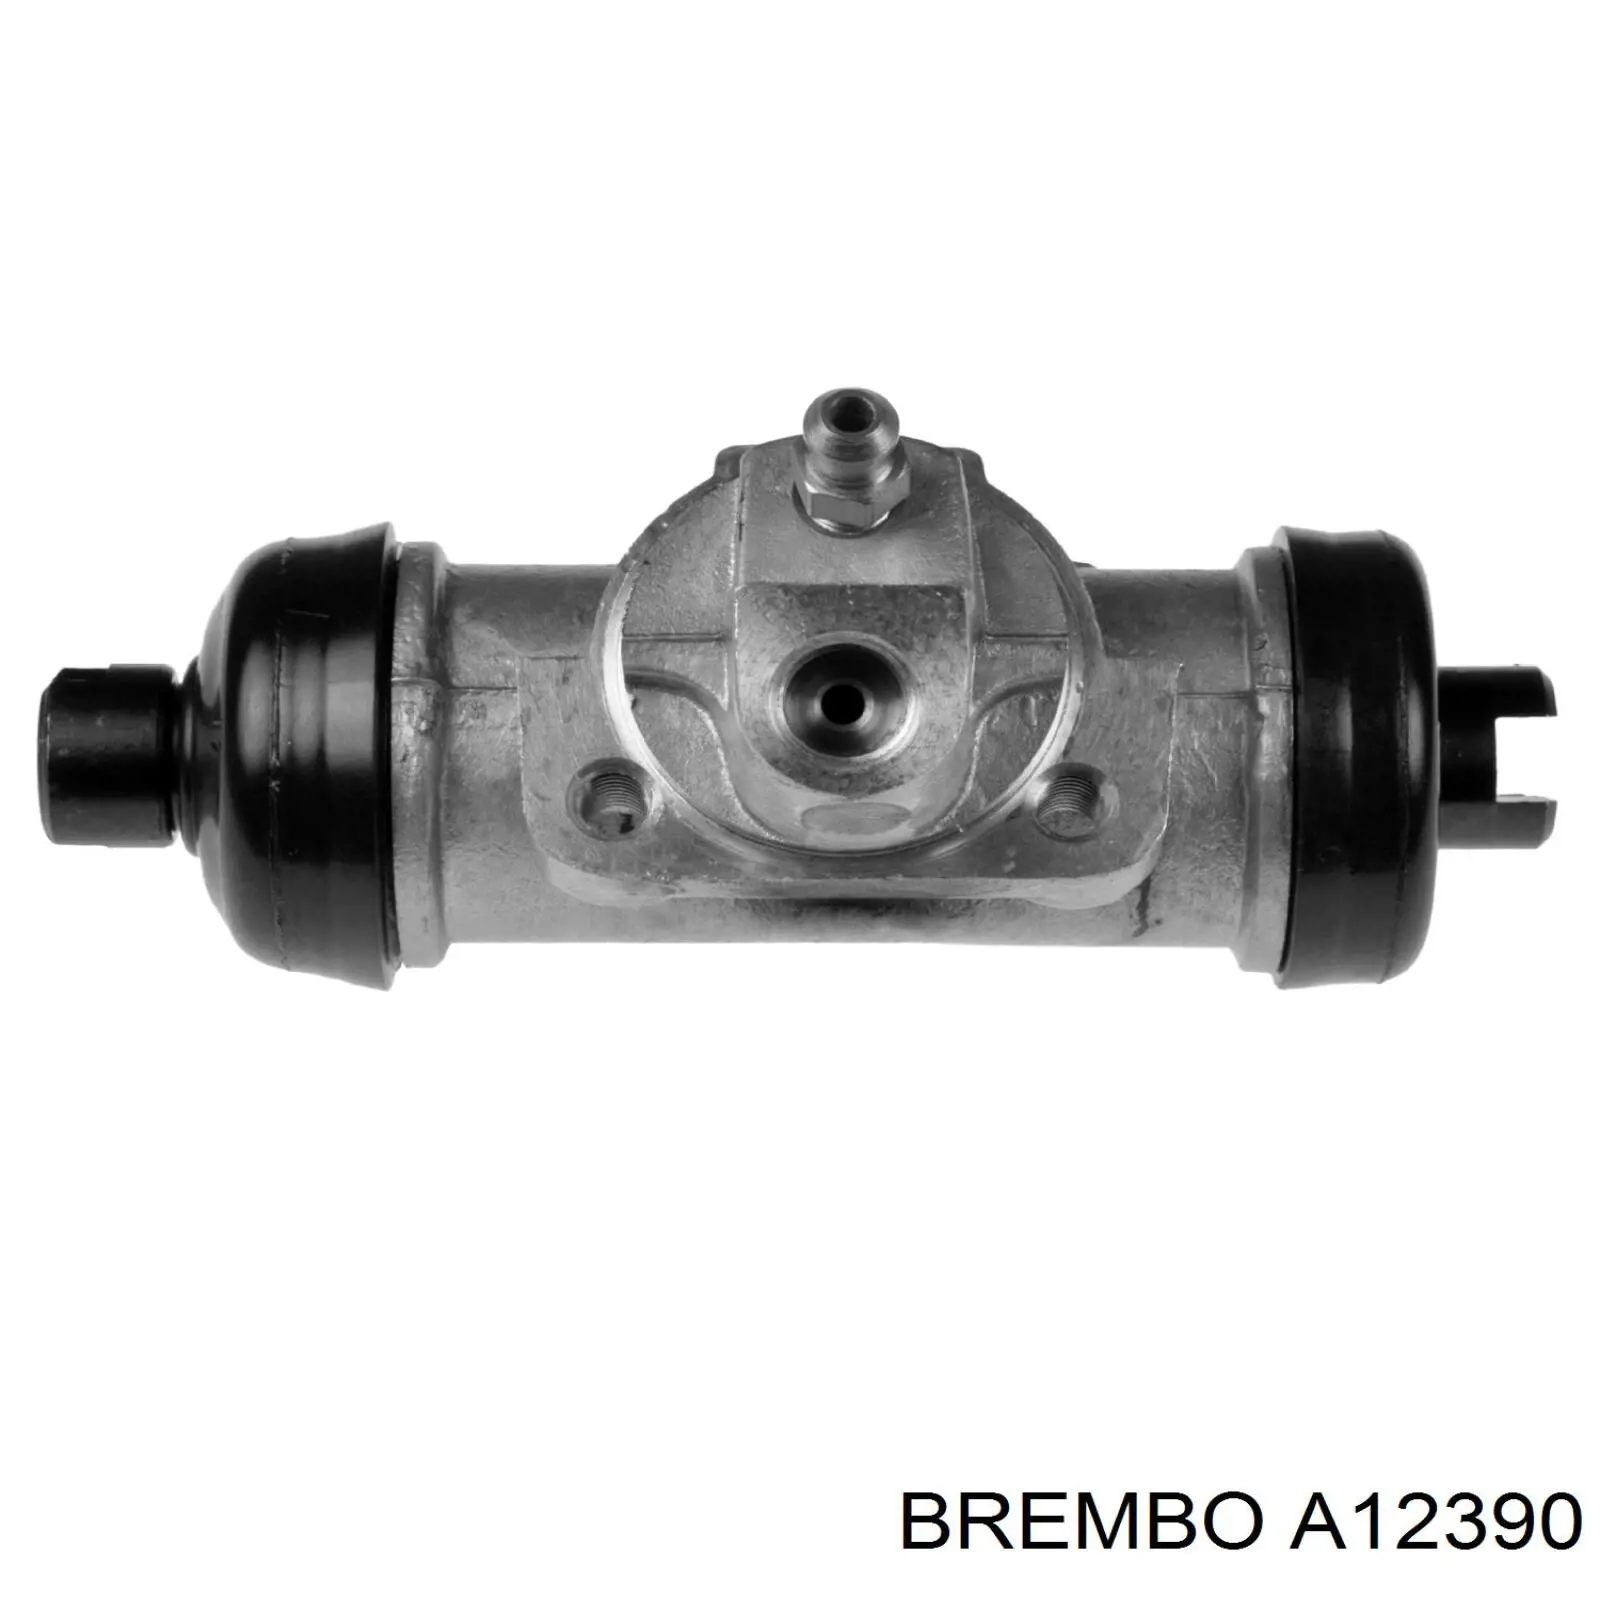 A12390 Brembo cilindro de freno de rueda trasero